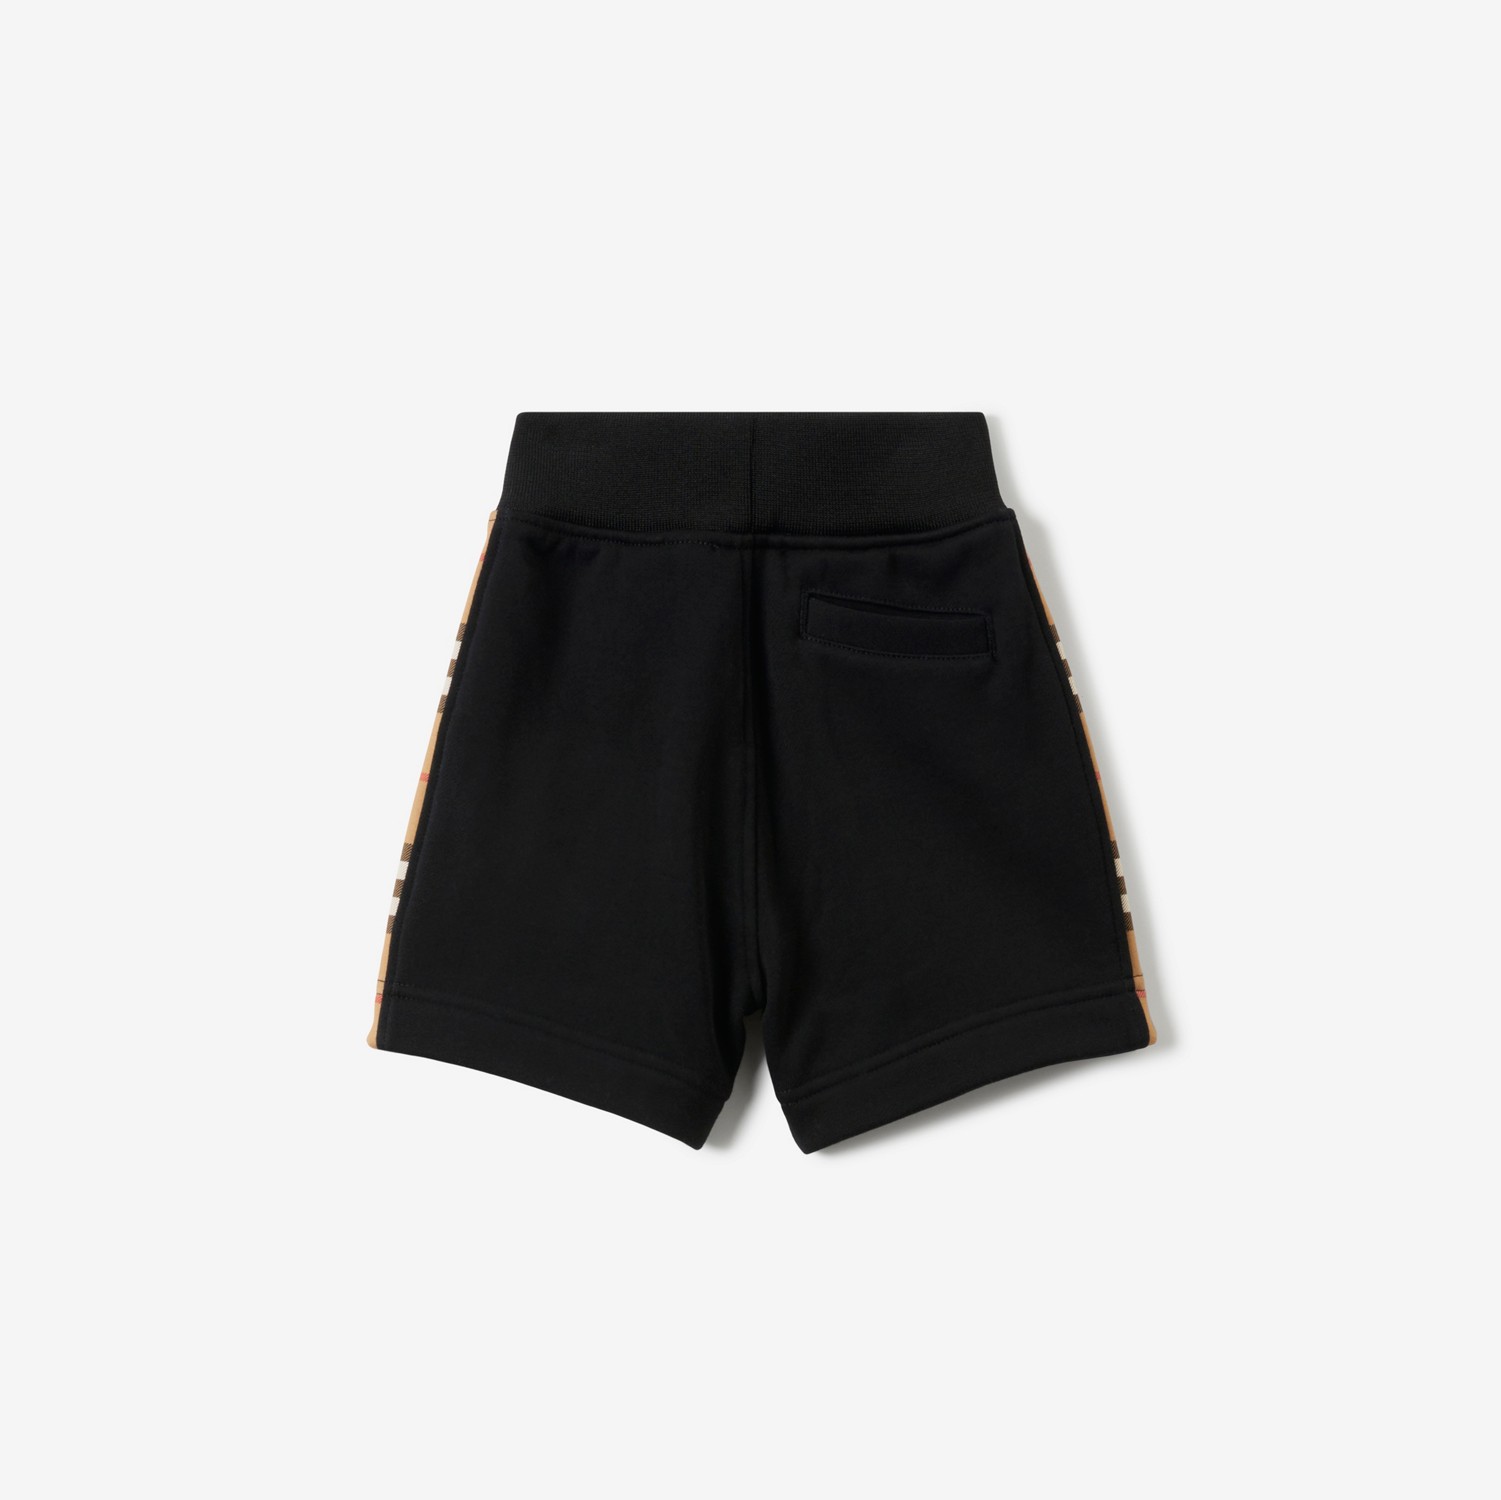 Pantaloncini in cotone con inserti Check (Nero) - Bambini | Sito ufficiale Burberry®